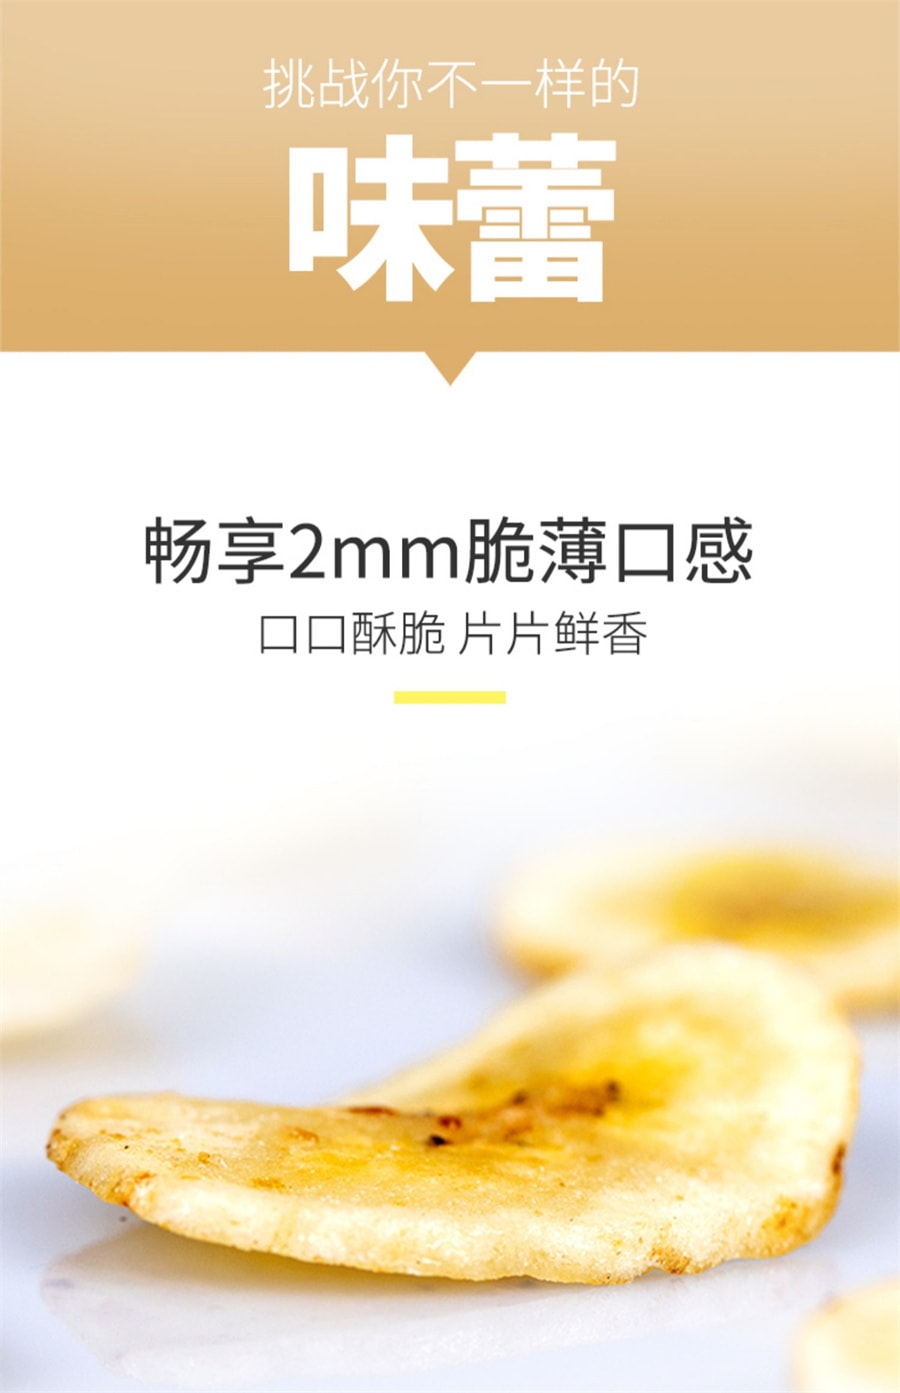 【中国直邮】薛记炒货 香蕉片香蕉干香蕉脆片水果干88g/袋